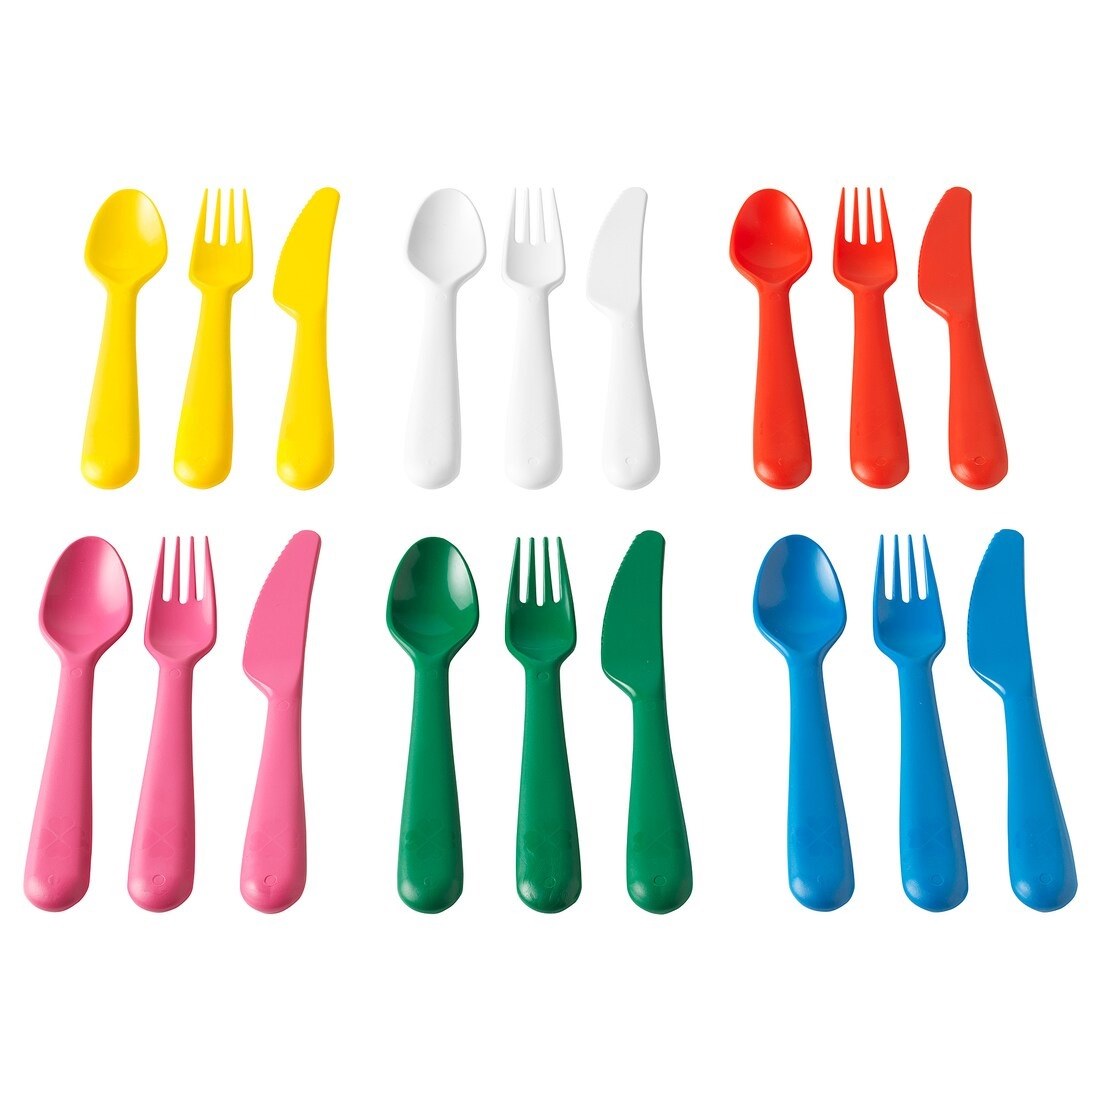 ikea kalas 18-piece cutlery set bright colors